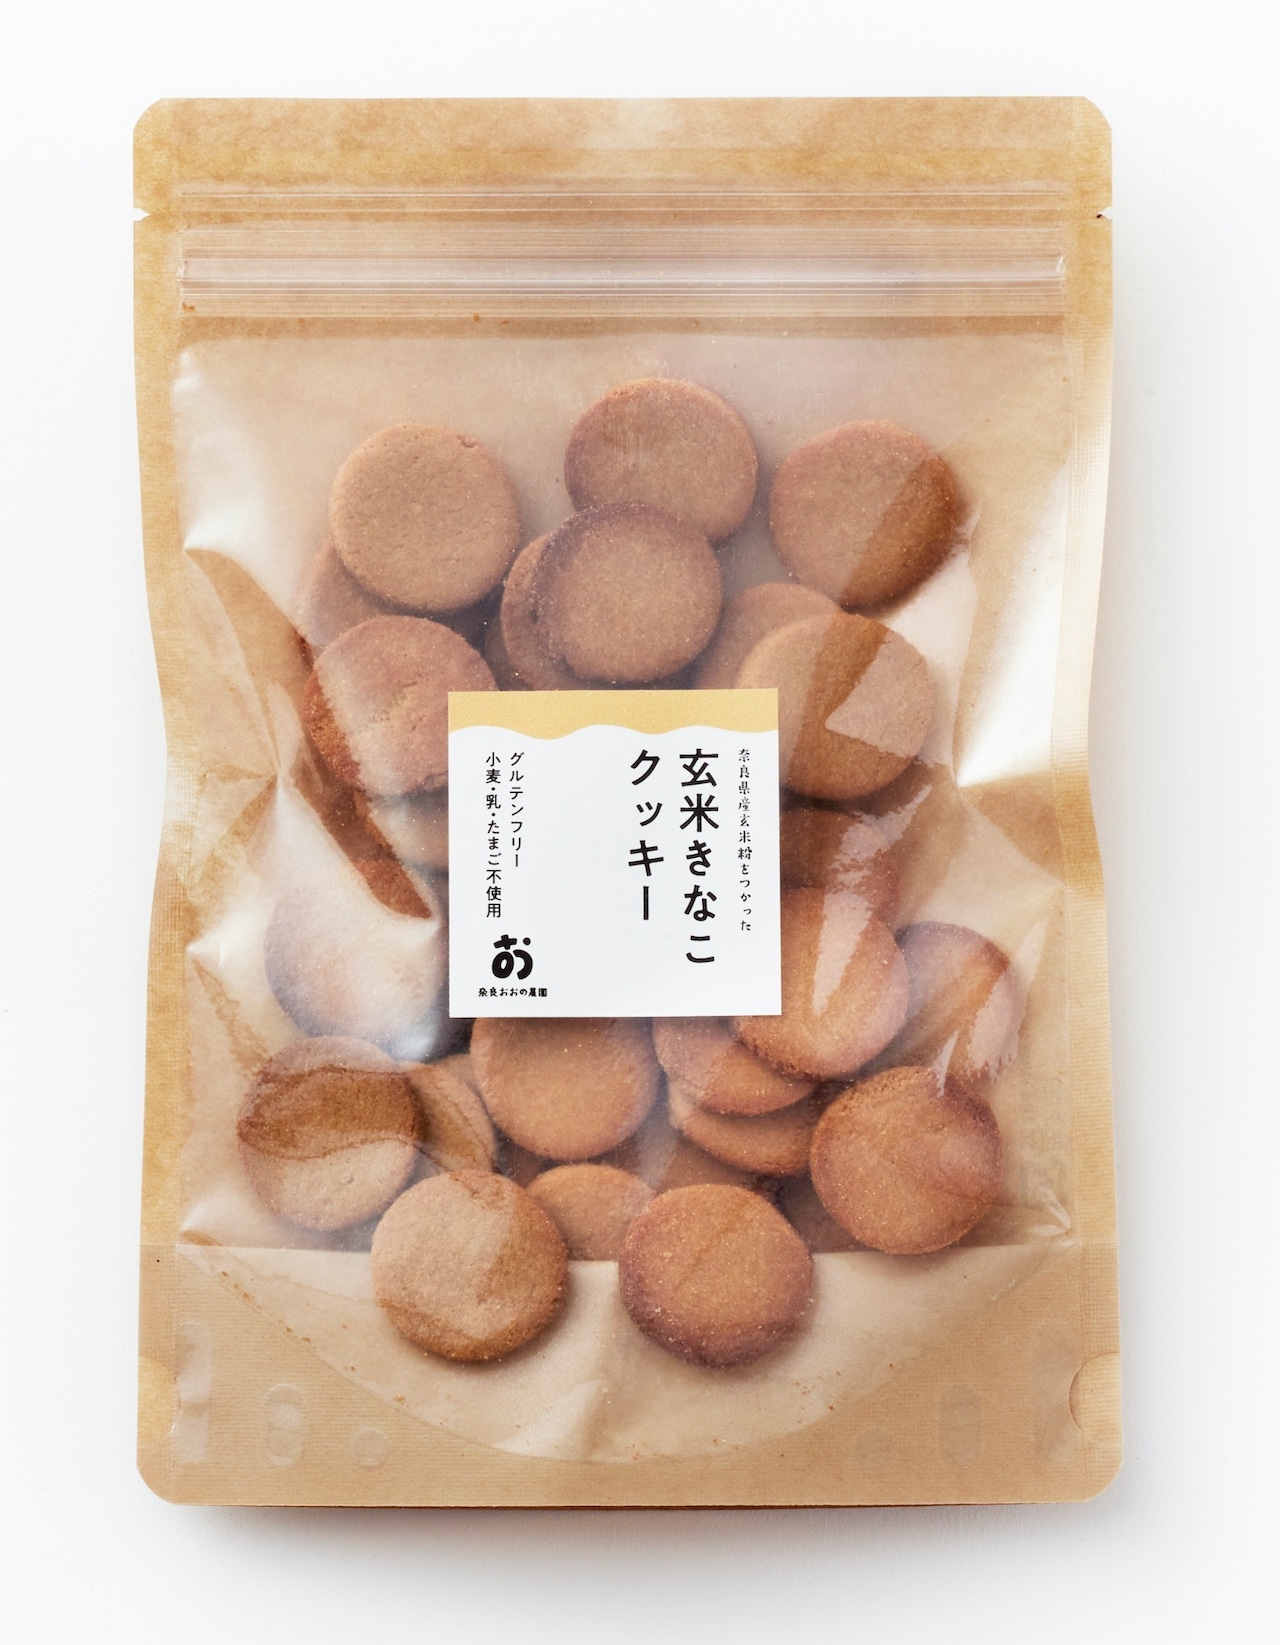 40枚入×1袋【グルテンフリー】小麦粉・卵・乳製品・白砂糖不使用「玄米きな粉クッキー」全国一律送料